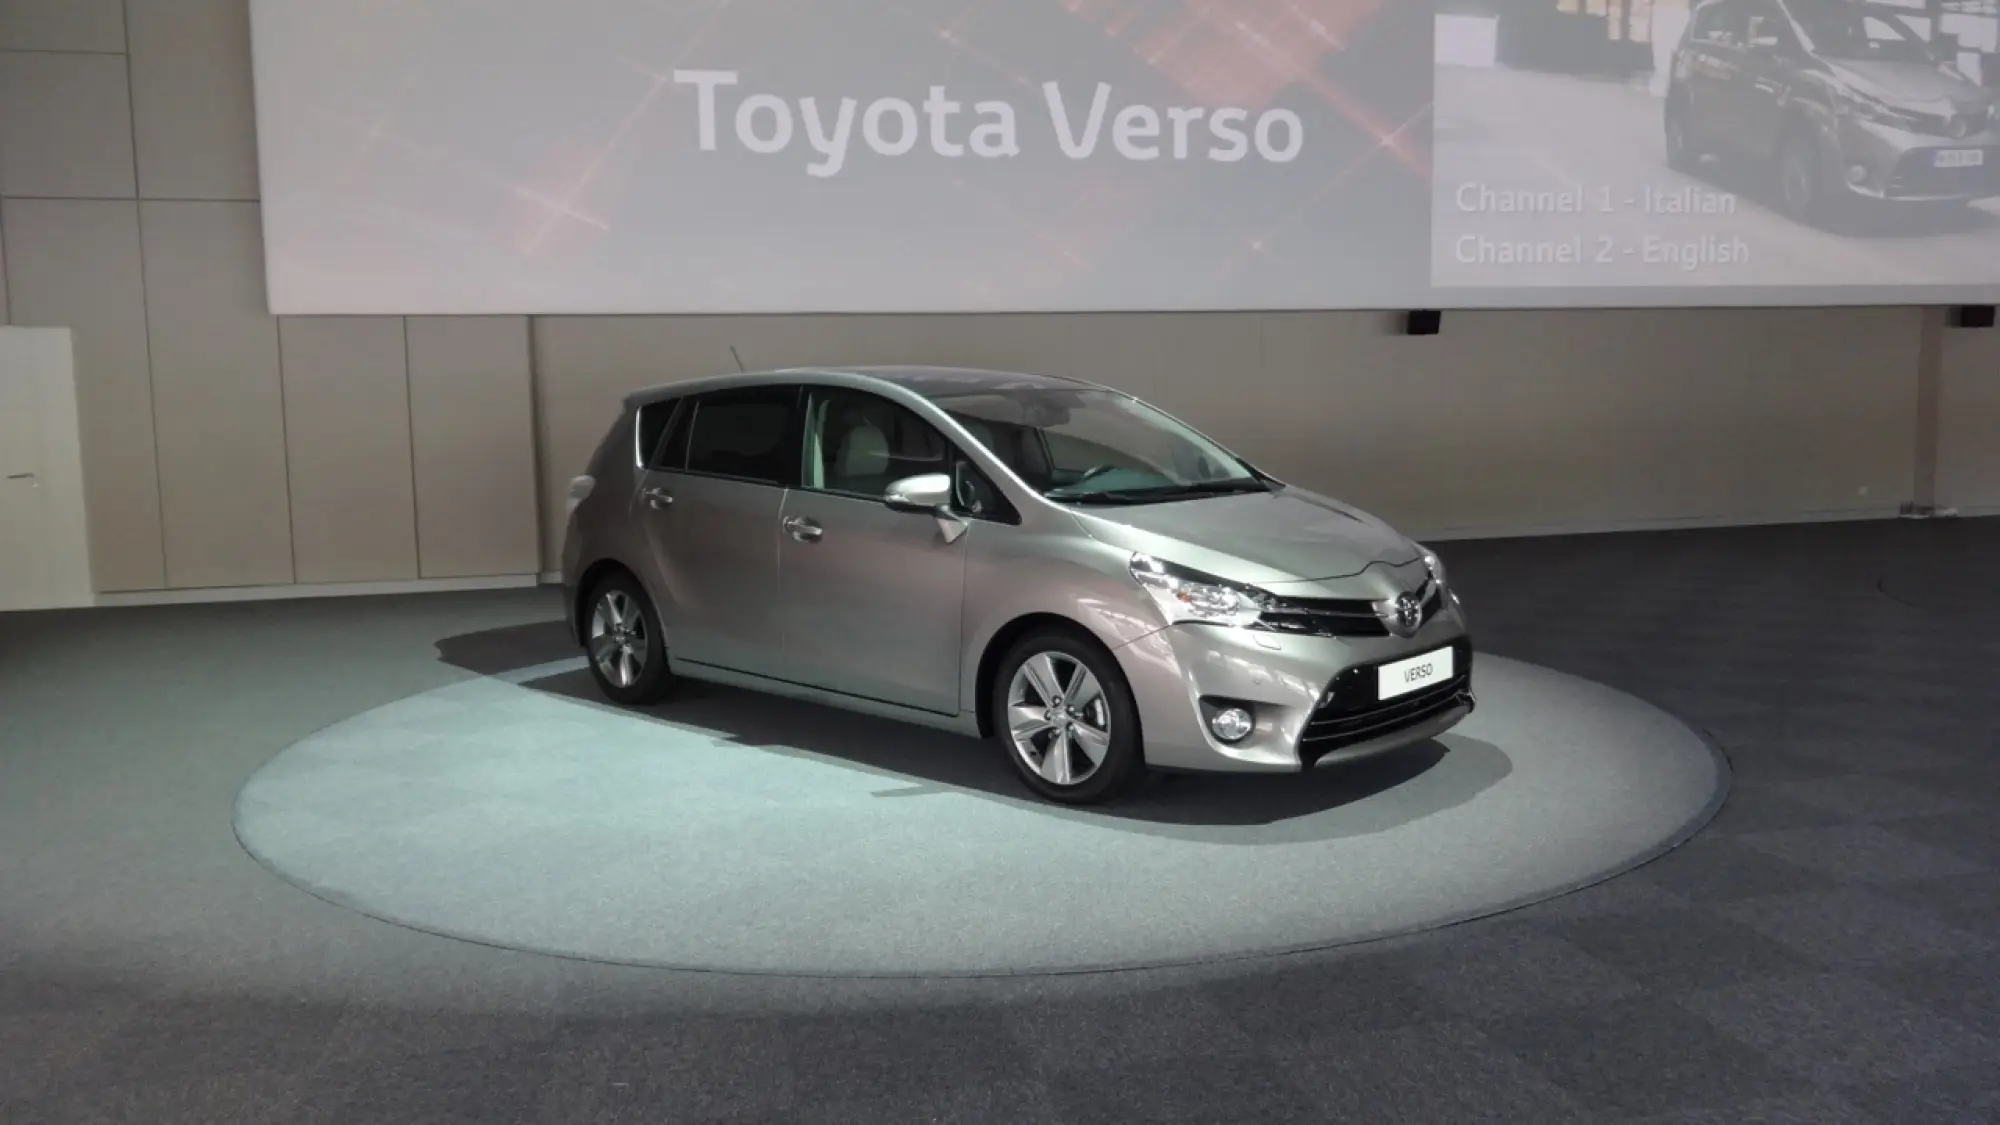 Toyota Verso MY 2014 1.6 D-4D - 23